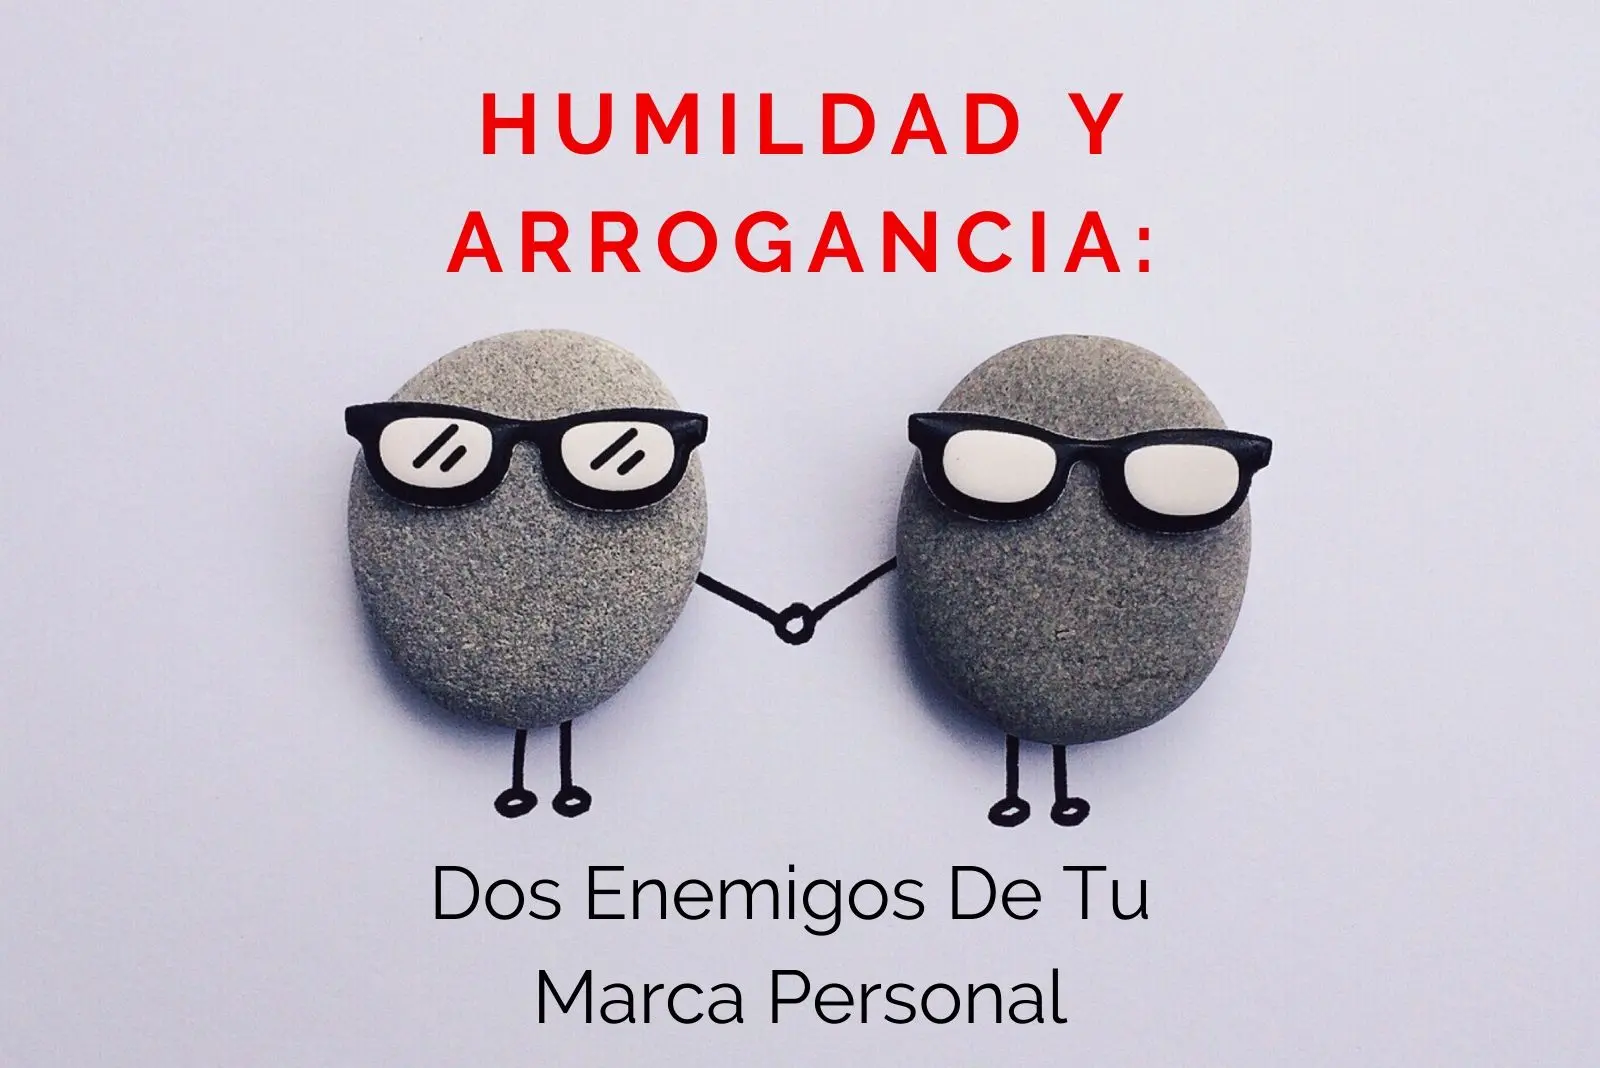 Hector-Jimenez-Humildad-y-Arrogancia-Dos-Enemigos-De-Tu-Marca-Personal